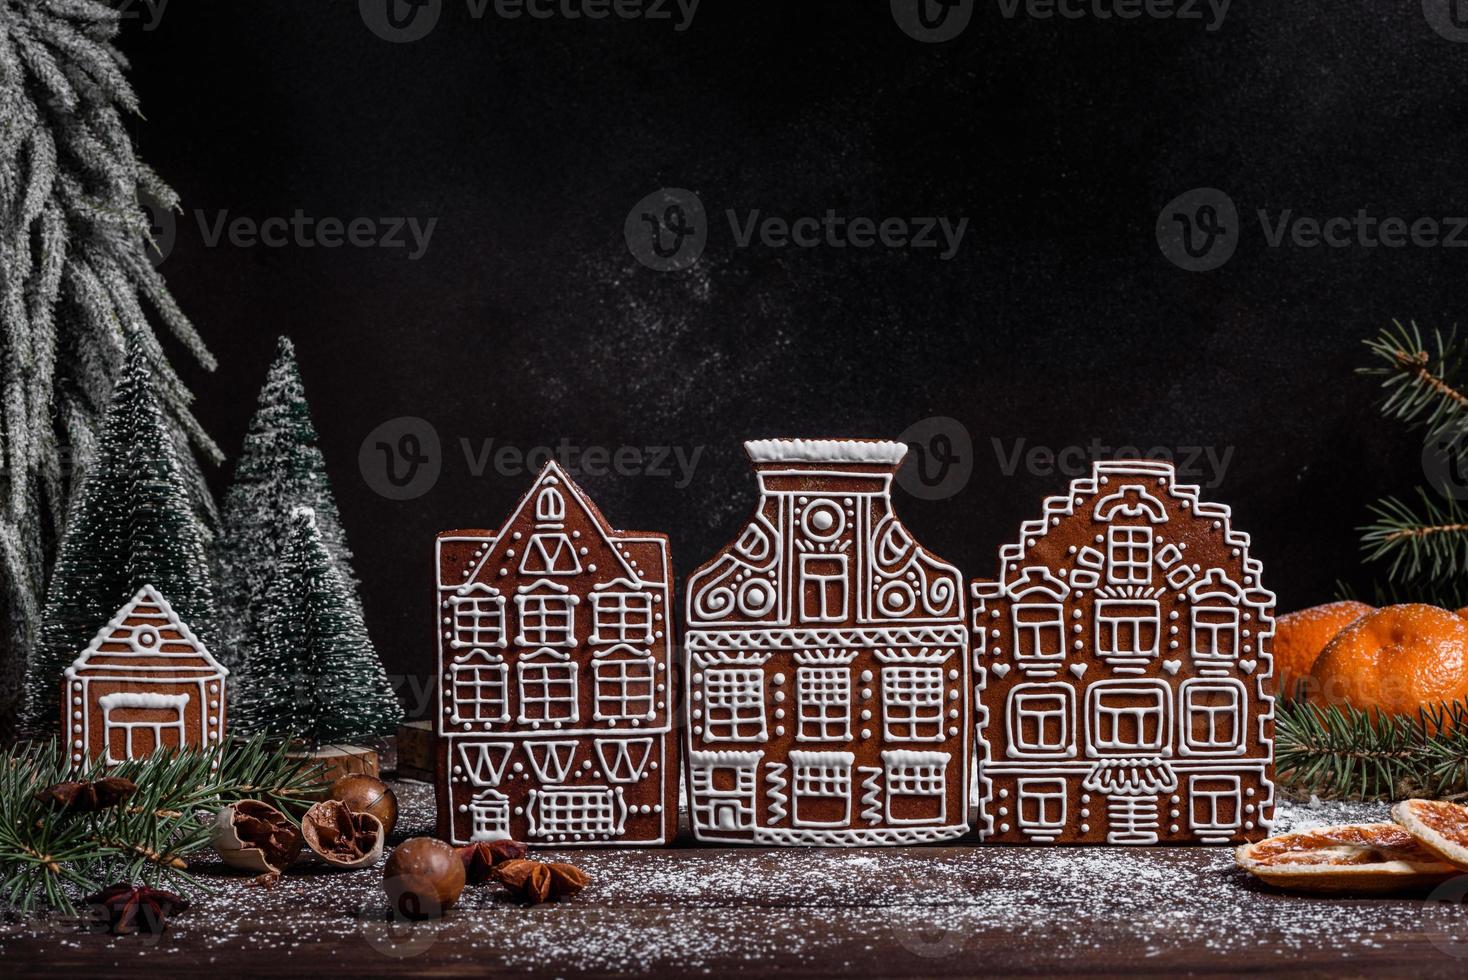 Deliciosos dulces hermosos en una mesa de madera oscura en la víspera de Navidad foto